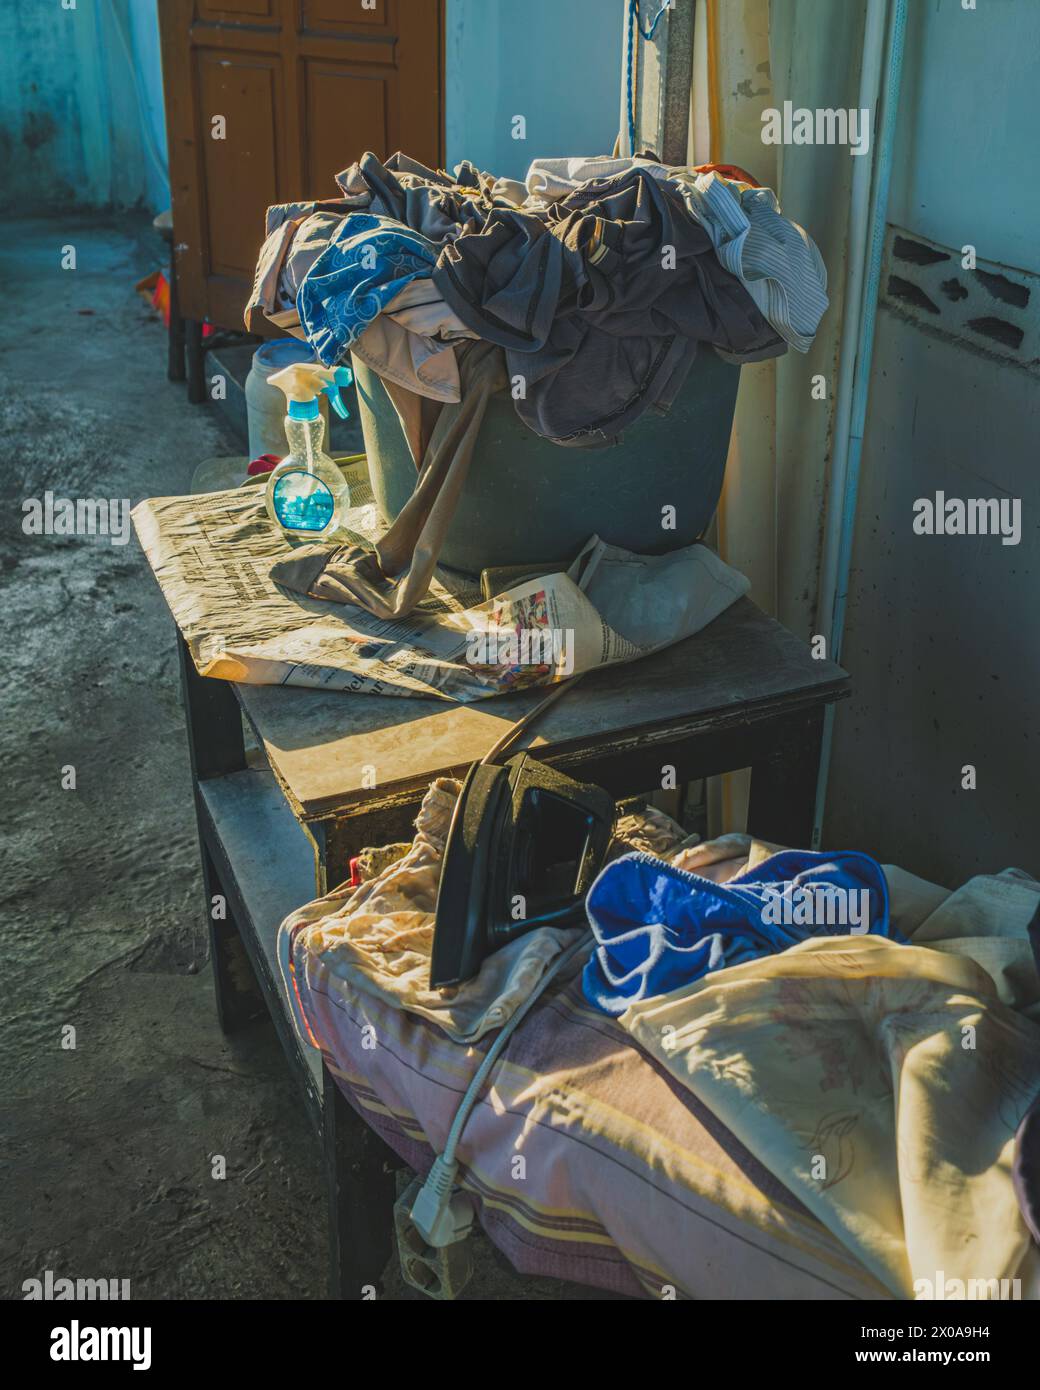 Auf einem hellbraunen Holztisch steht ein Wäschekorb mit bunten Kleidern. Ein blaues Bügeleisen und eine weiße Sprühflasche liegen rechts vom Ba Stockfoto